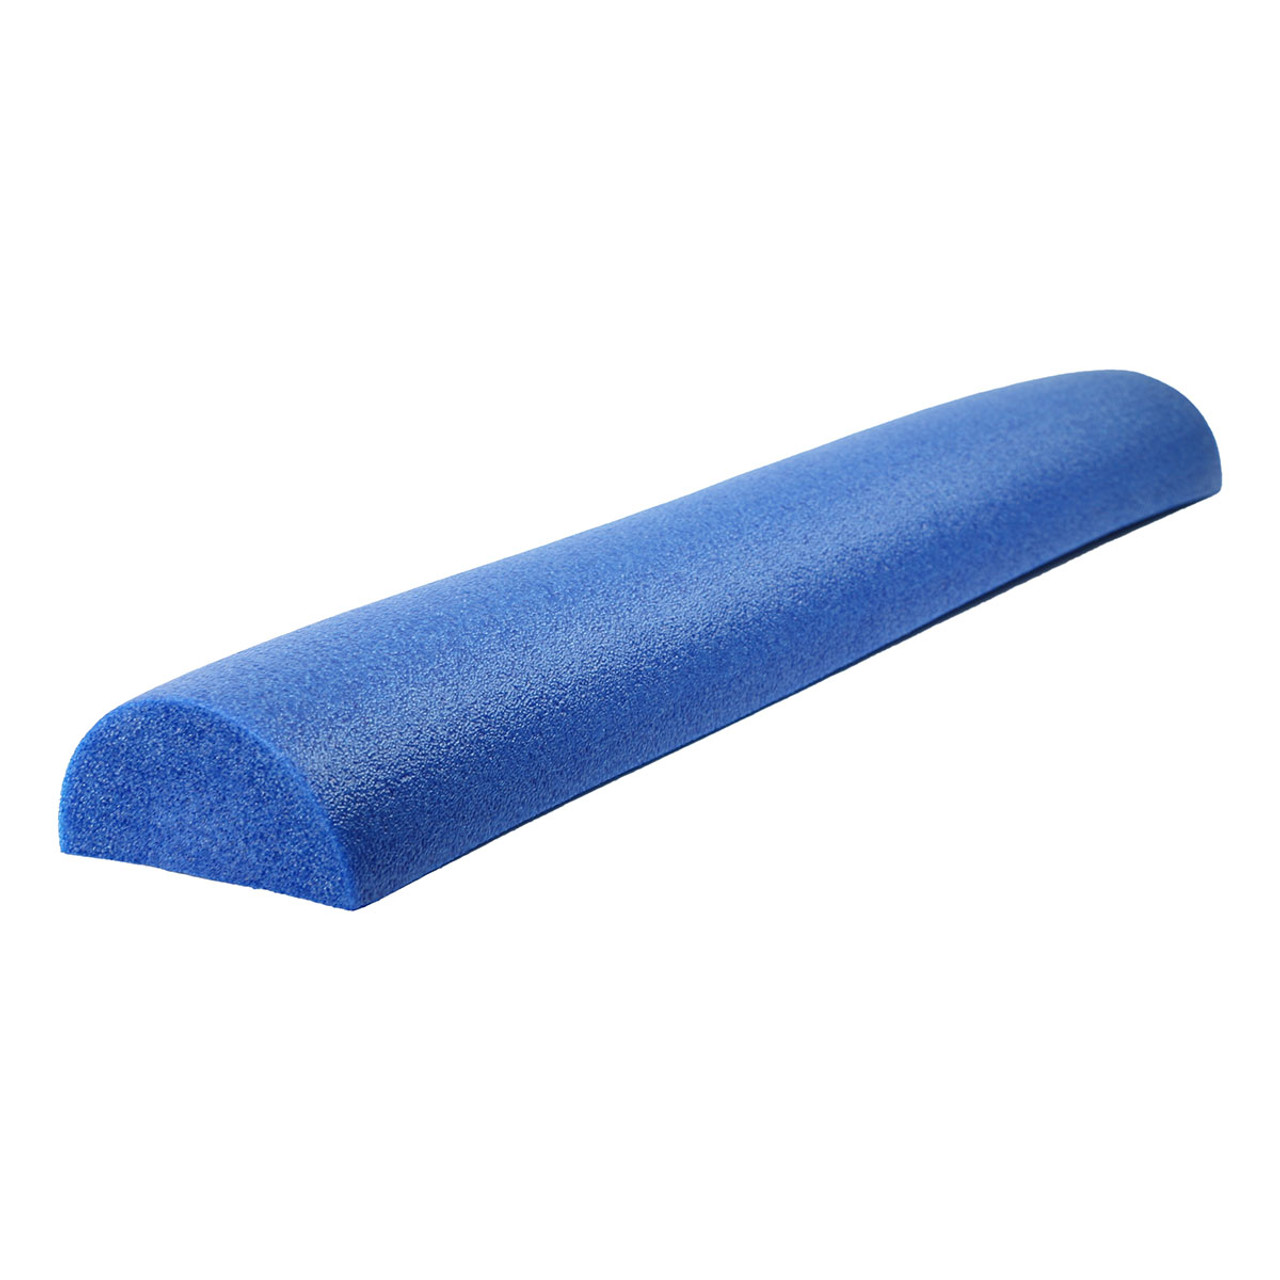 CanDo¨ Foam Roller - Blue PE foam - 6" x 36" - Half-Round